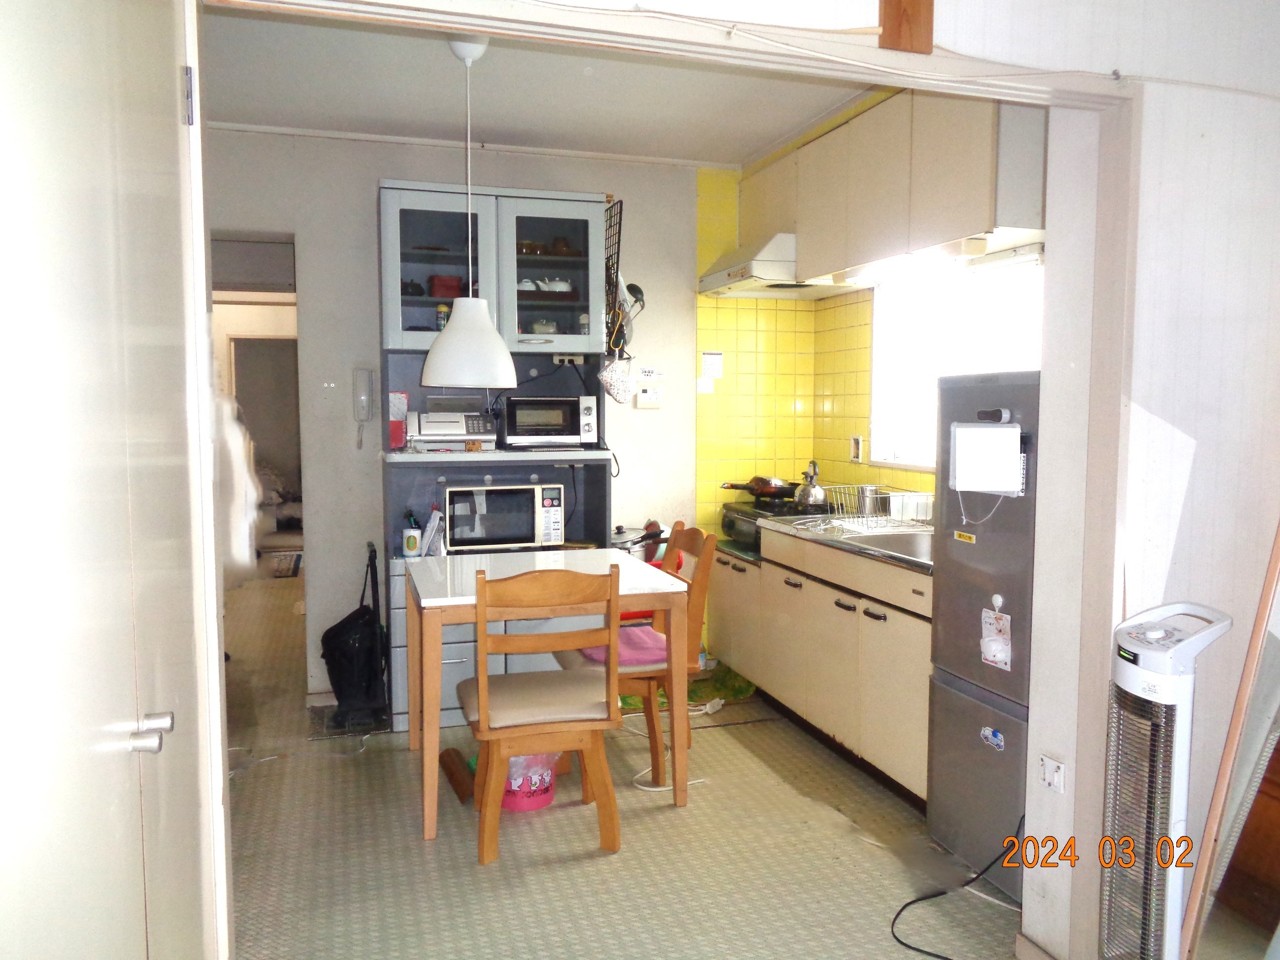 キッチン部分です。黄色いタイルがキッチンを明るく見せてます。